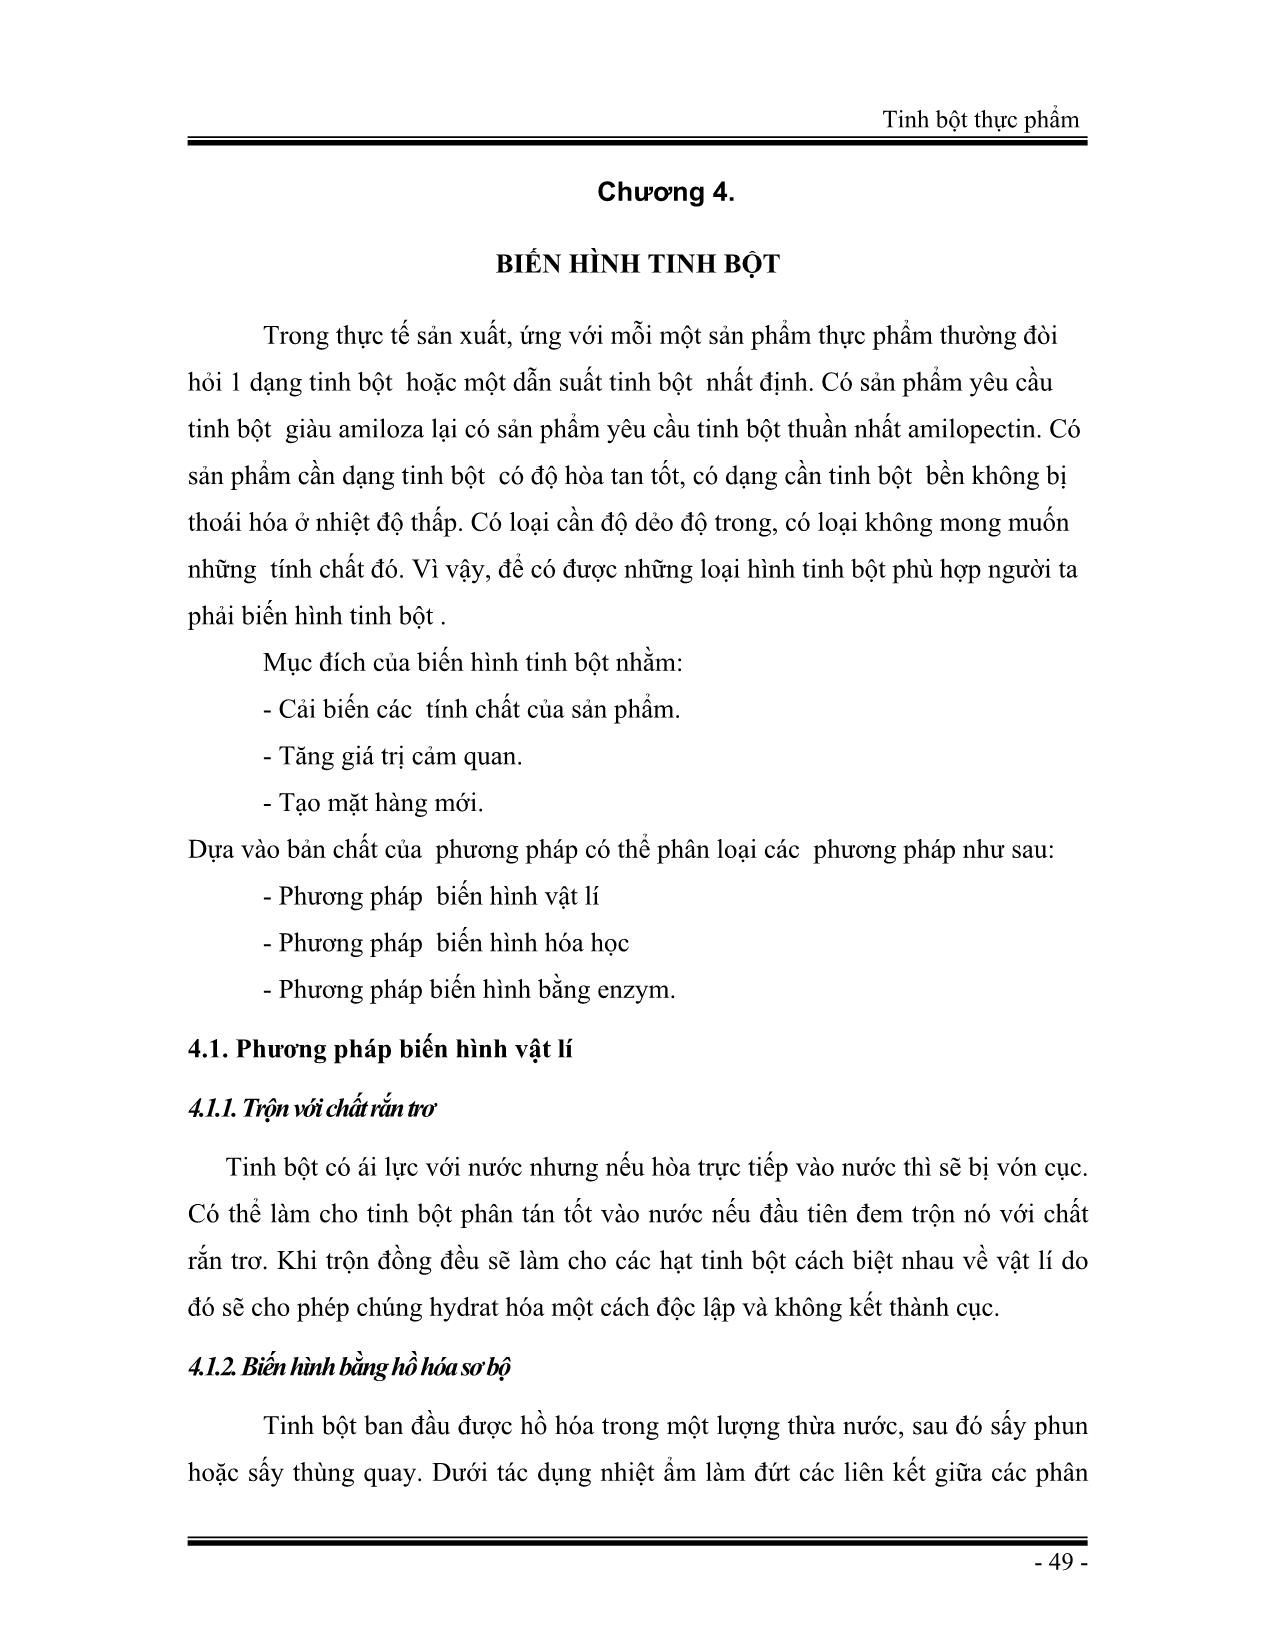 Giáo trình Tinh bột thực phẩm (Phần 2) trang 1